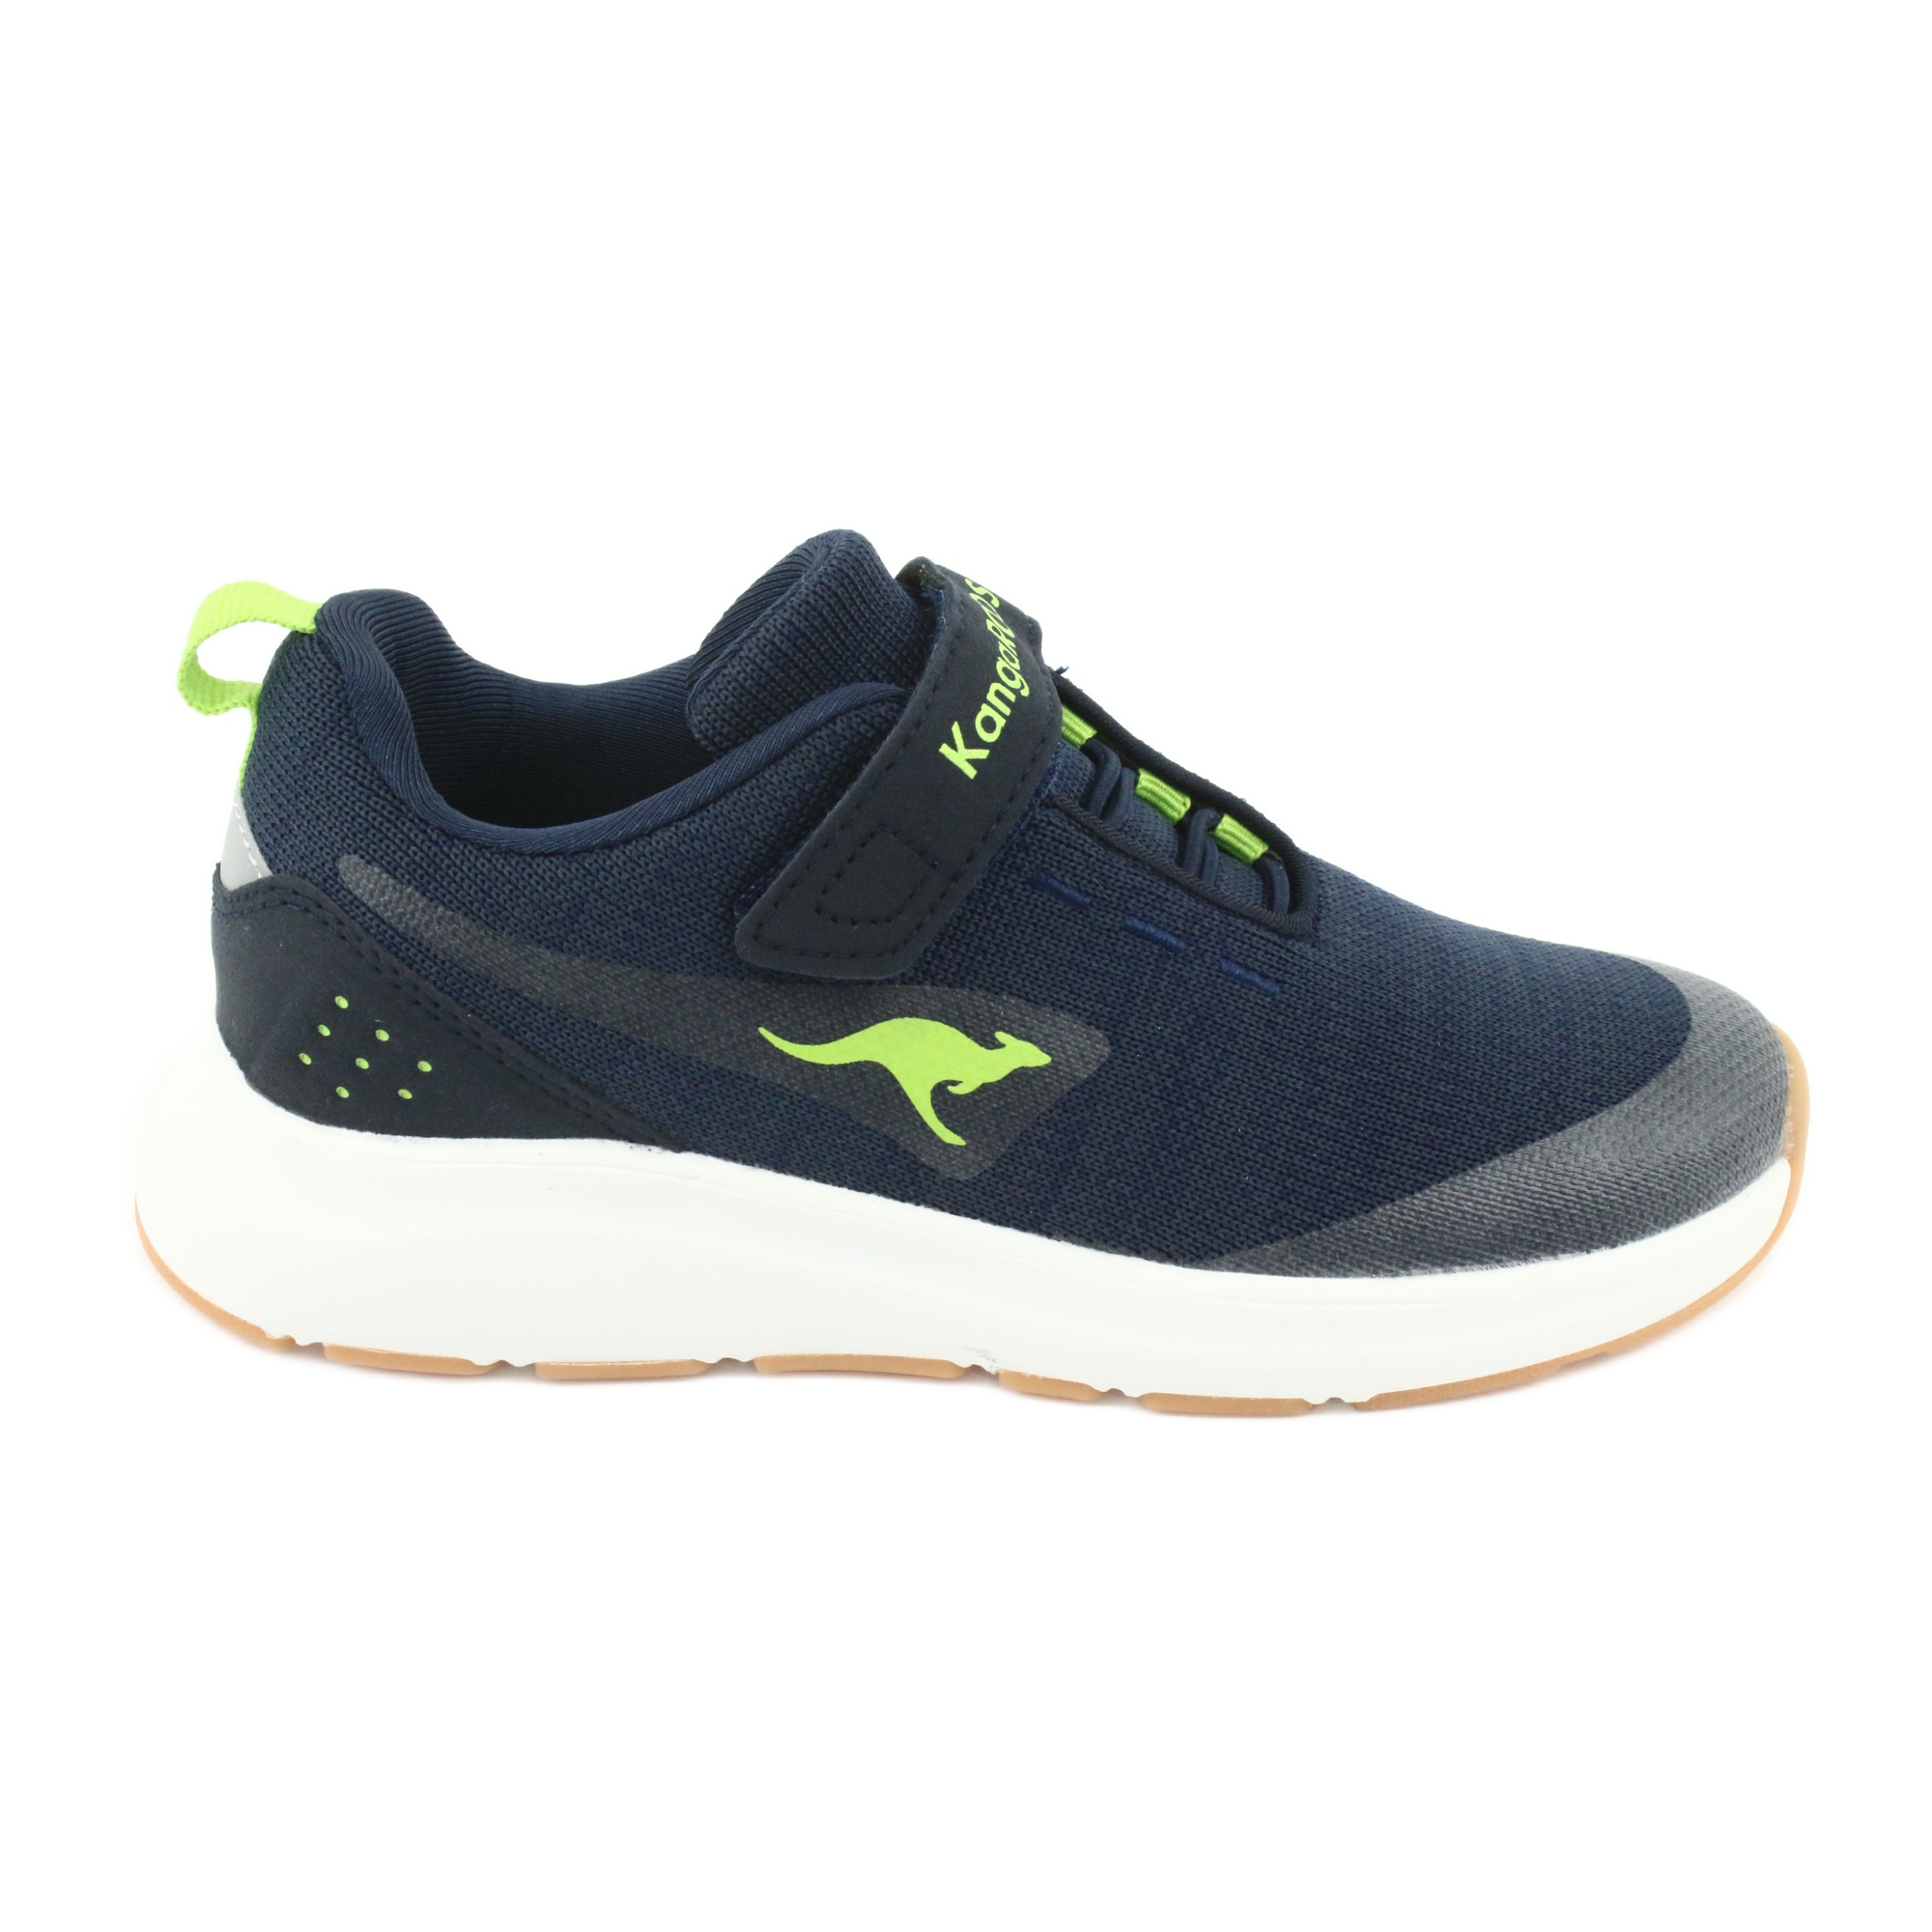 Theseus Bondgenoot Aardewerk KangaROOS sports shoes with Velcro 18508 navy / lime navy blue green -  KeeShoes